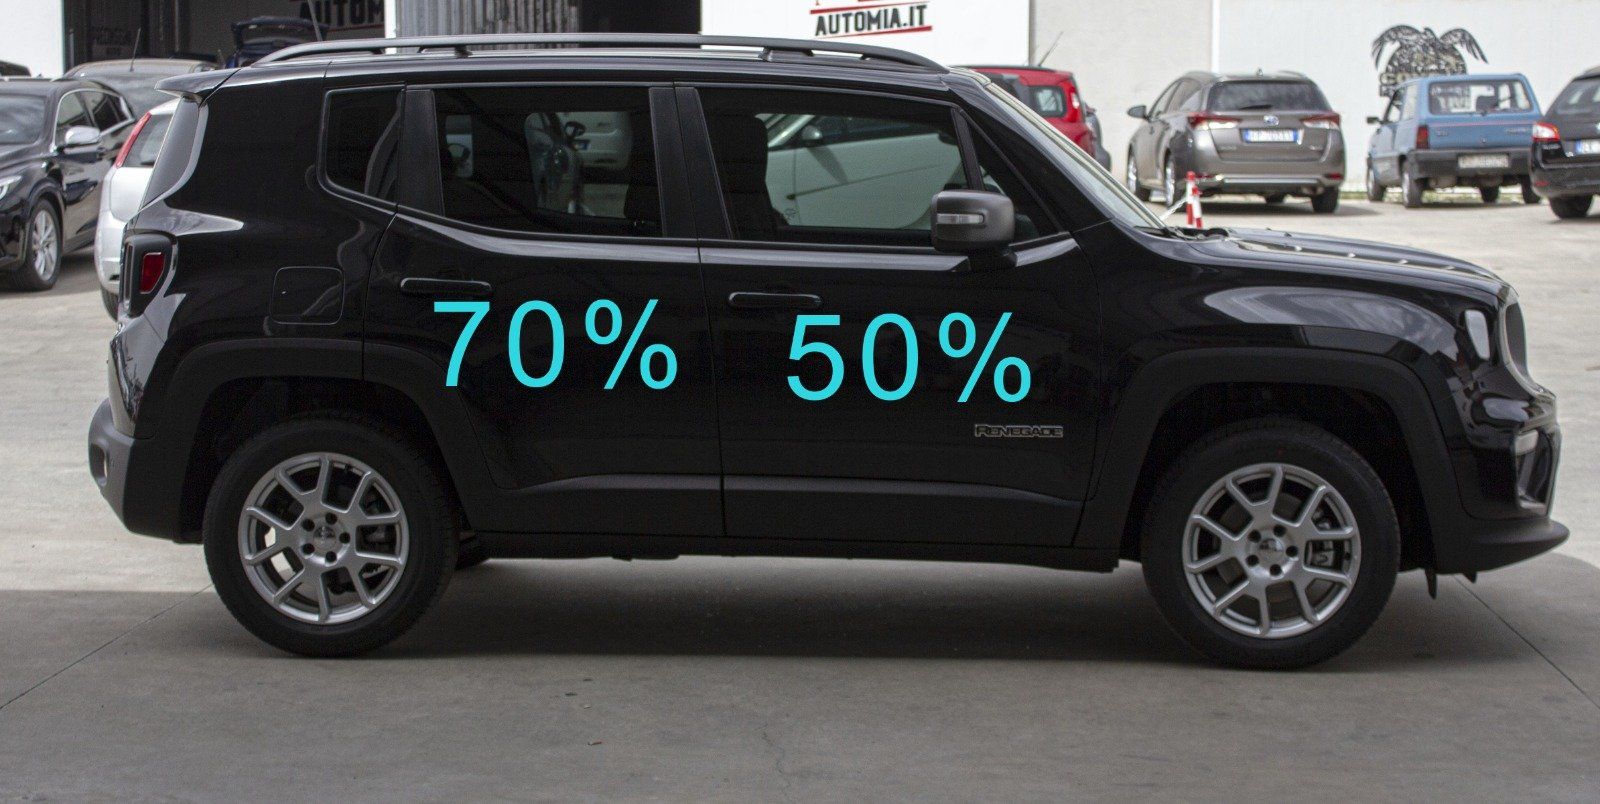 Gradazione  tonalità oscuramento vetri auto con pellicole oscuranti al 70% Jeep Renegate